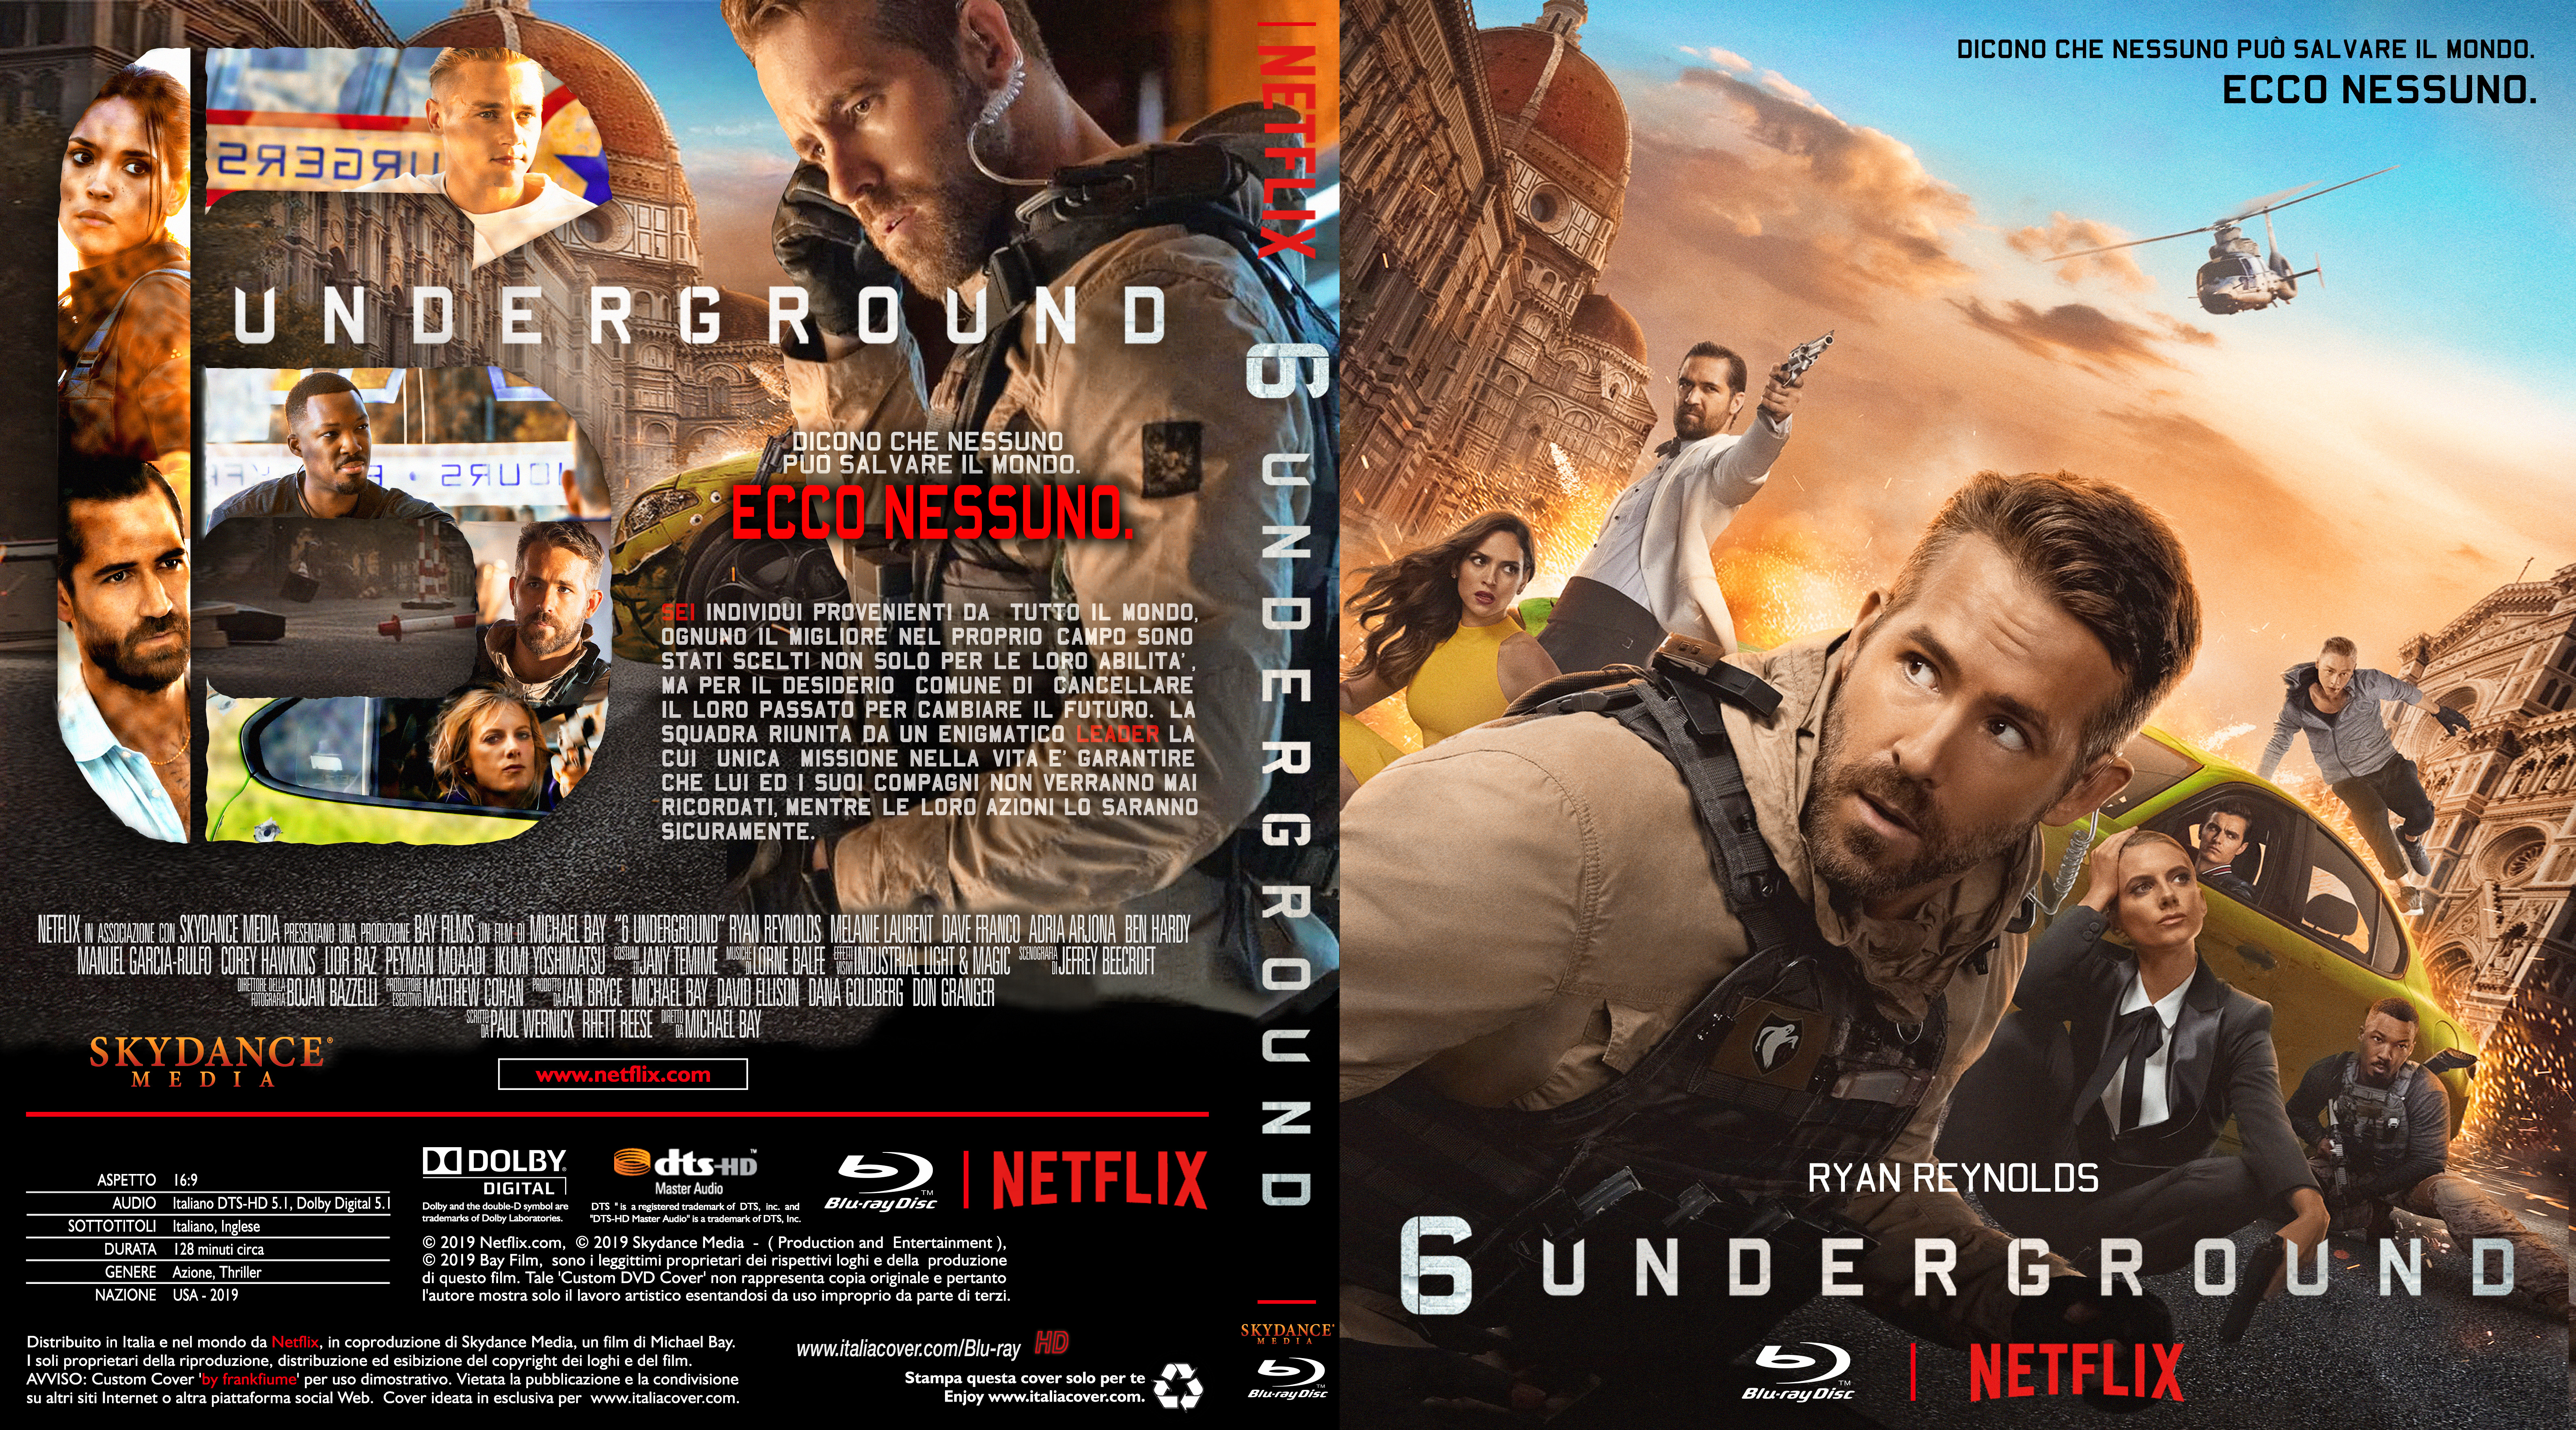 6 Underground - Skydance Media